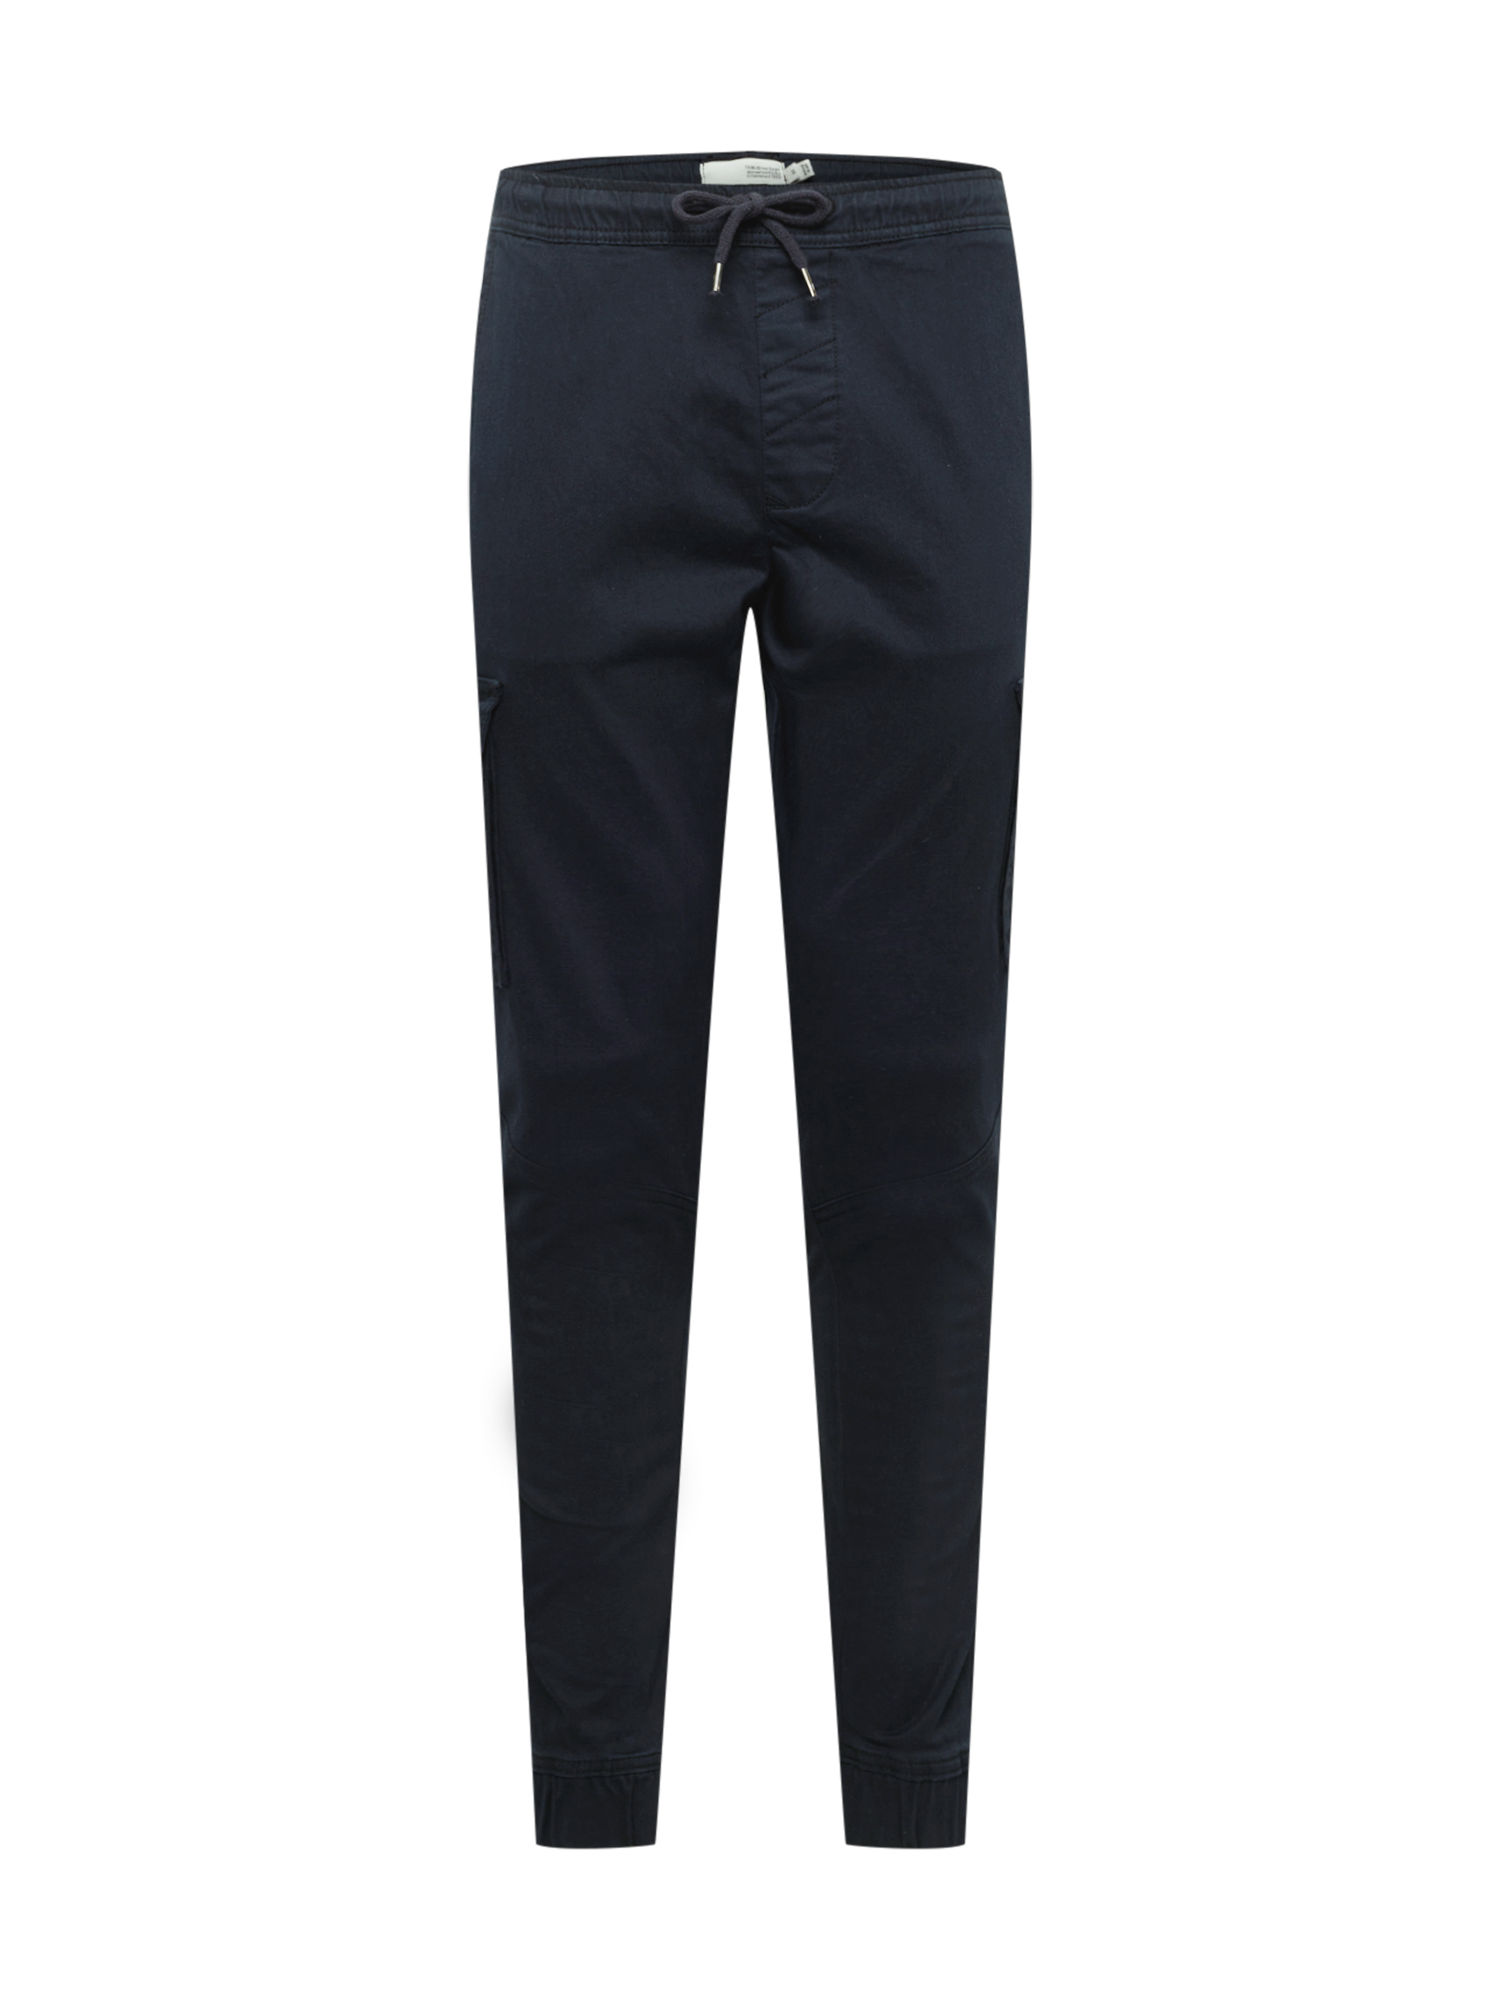 Spodnie Odzież  Solid Bojówki w kolorze Czarnym 